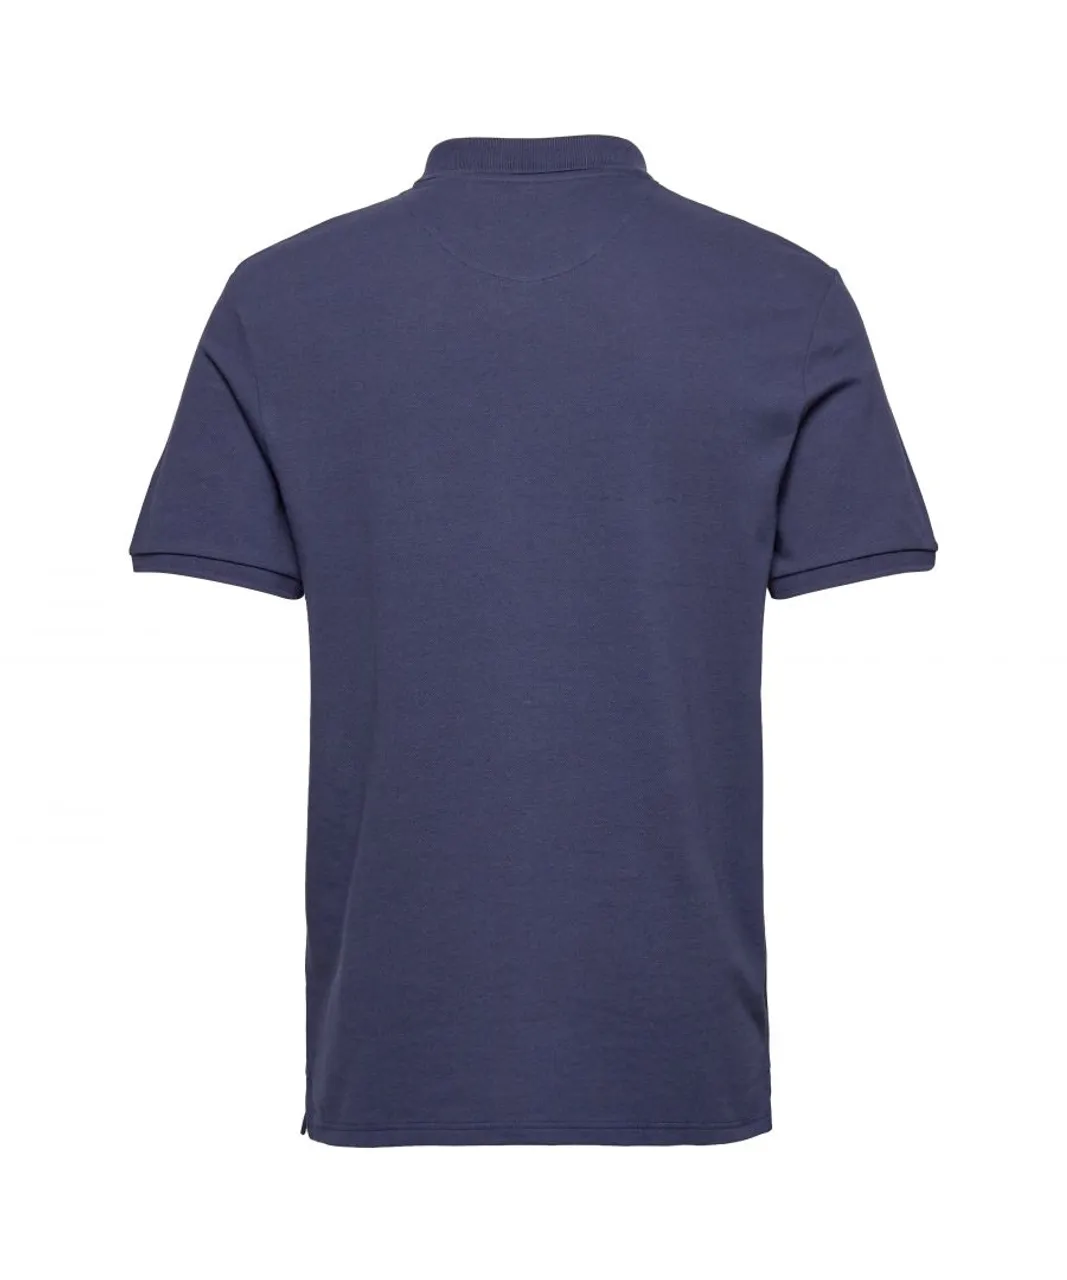 Lyle & Scott Mens Plain Polo Shirt in Navy - Blue Cotton